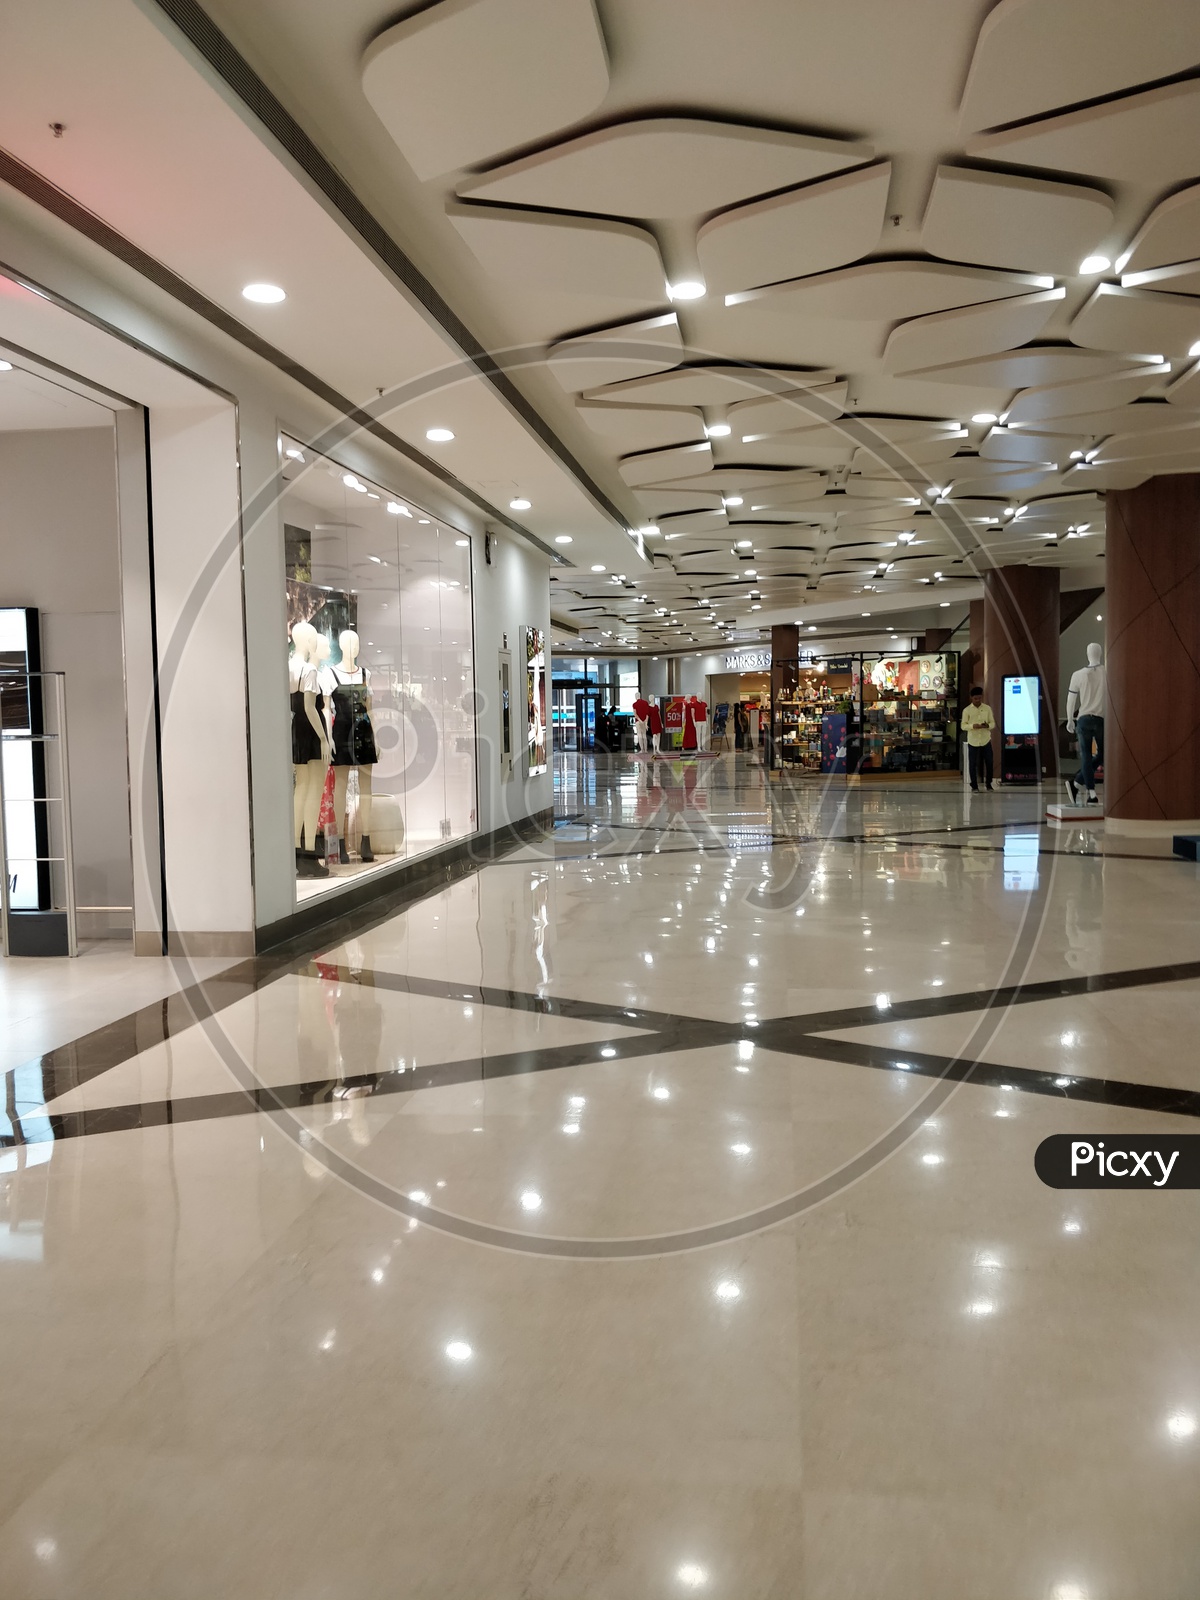 Corridor of a mall